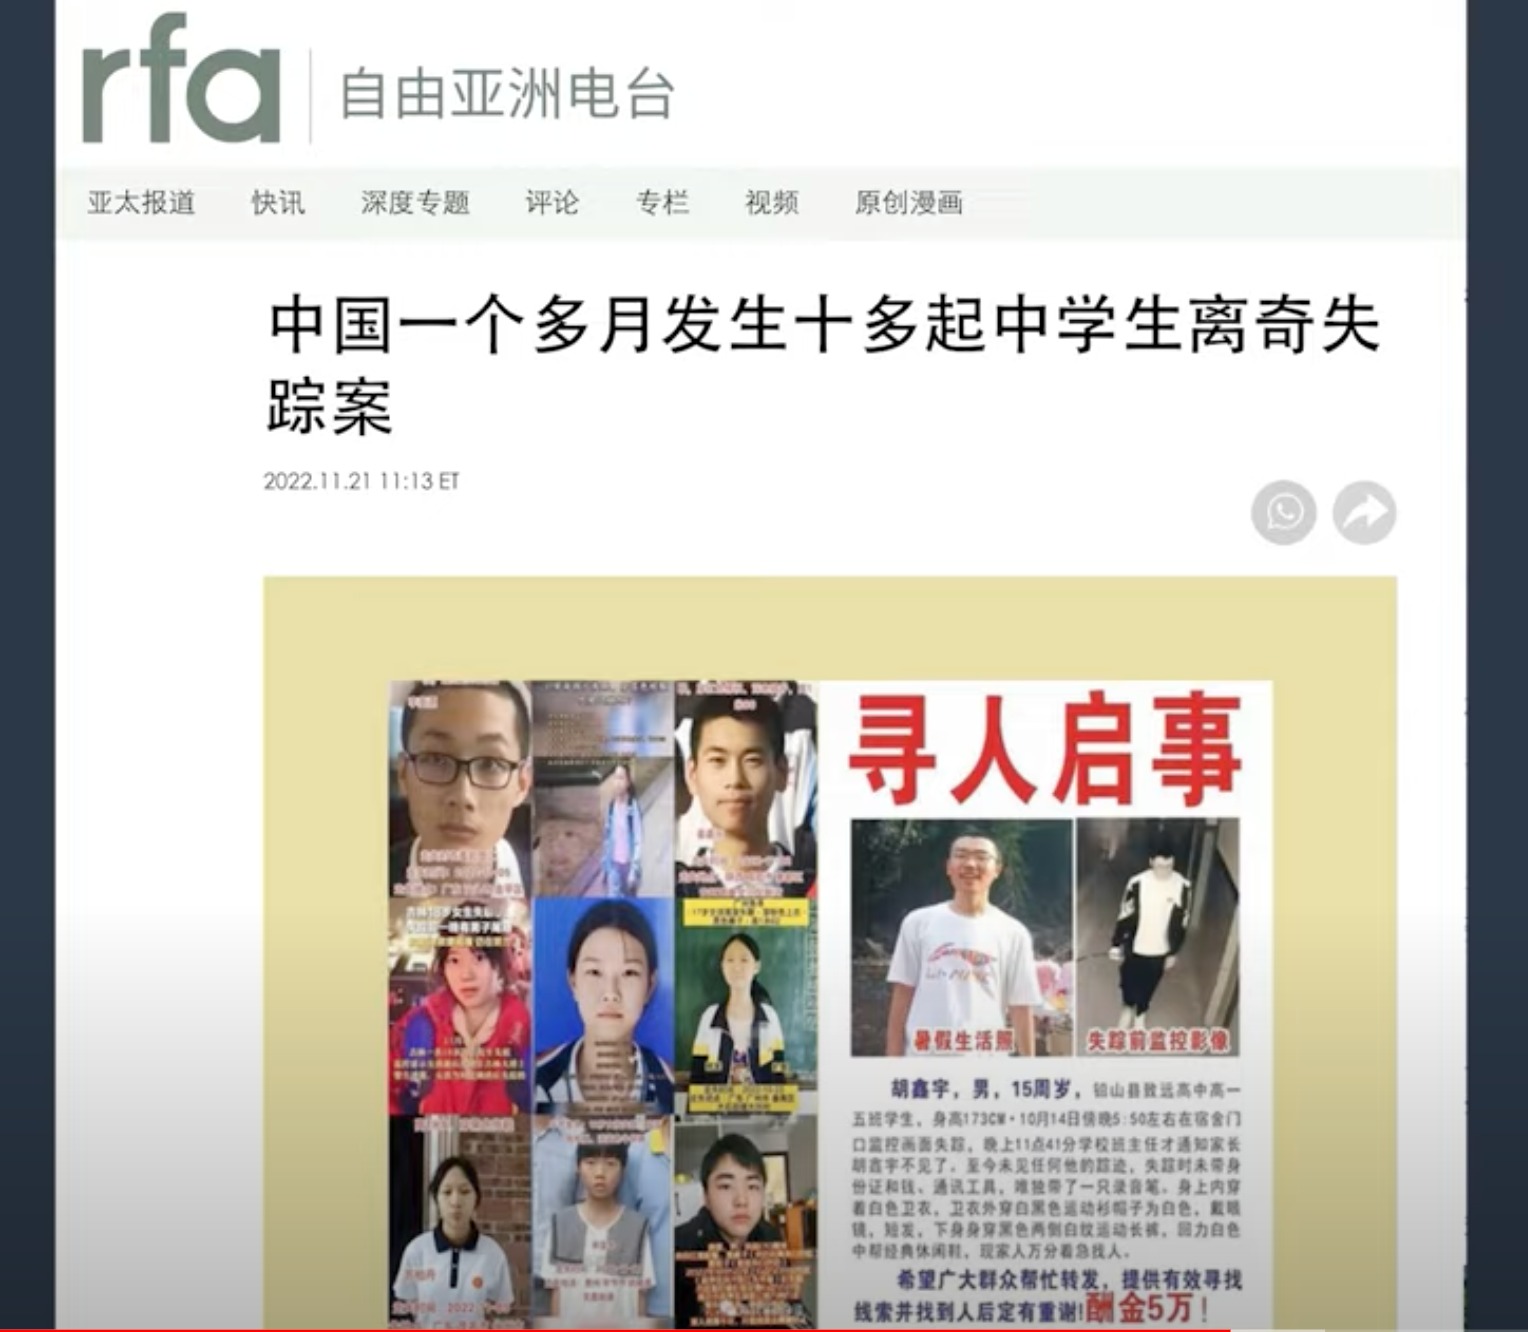 中国各地青少年失踪案频发